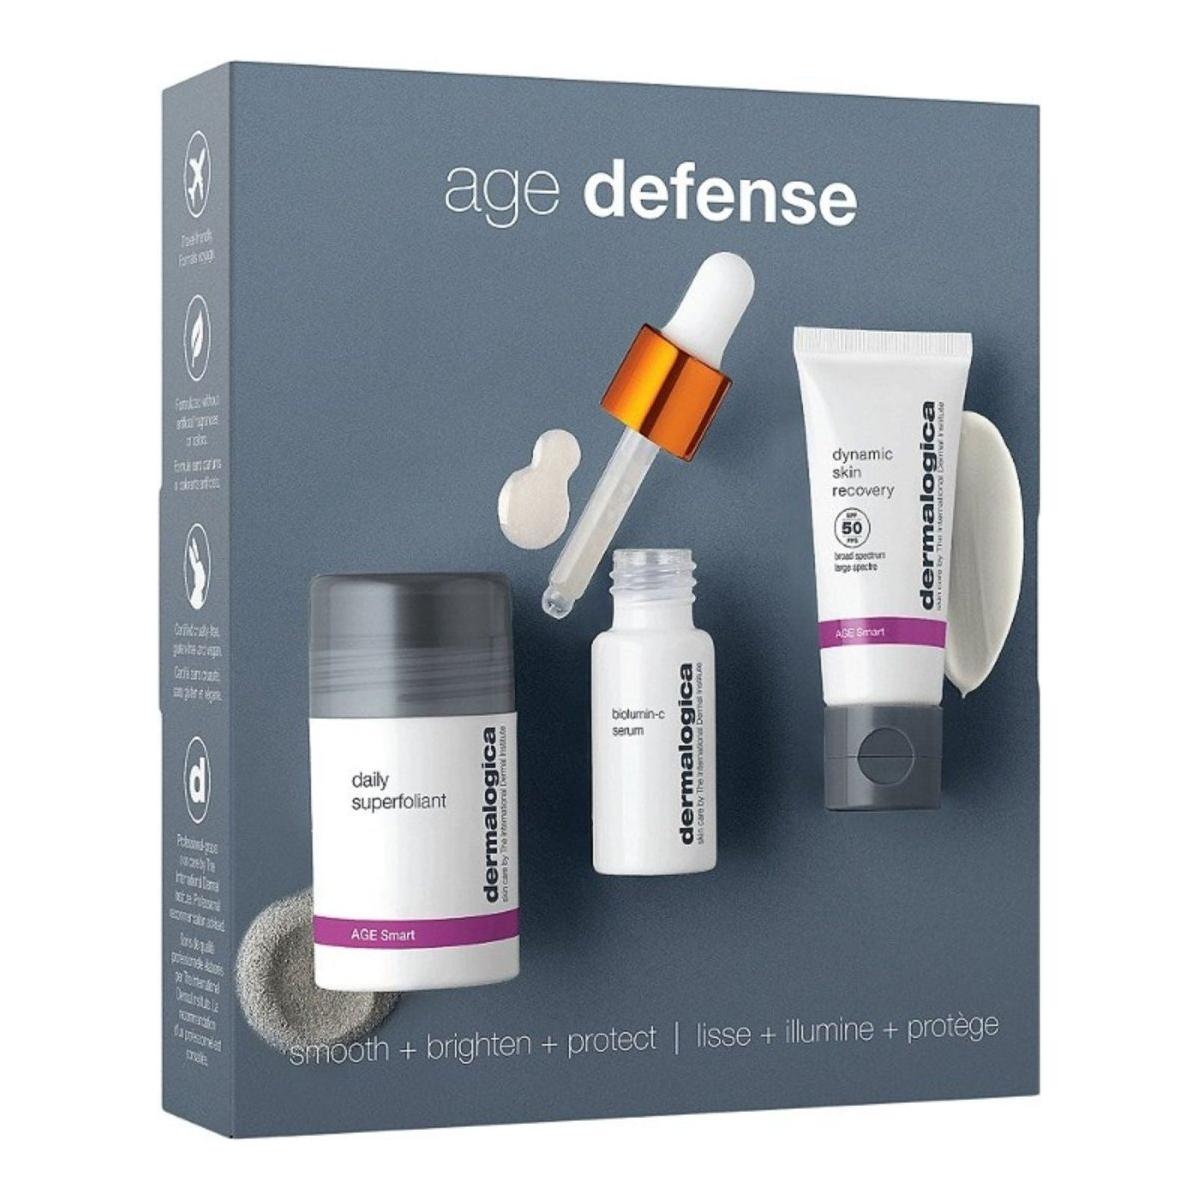 Dermalogica | Age Defense Kit - DG International Ventures Limited